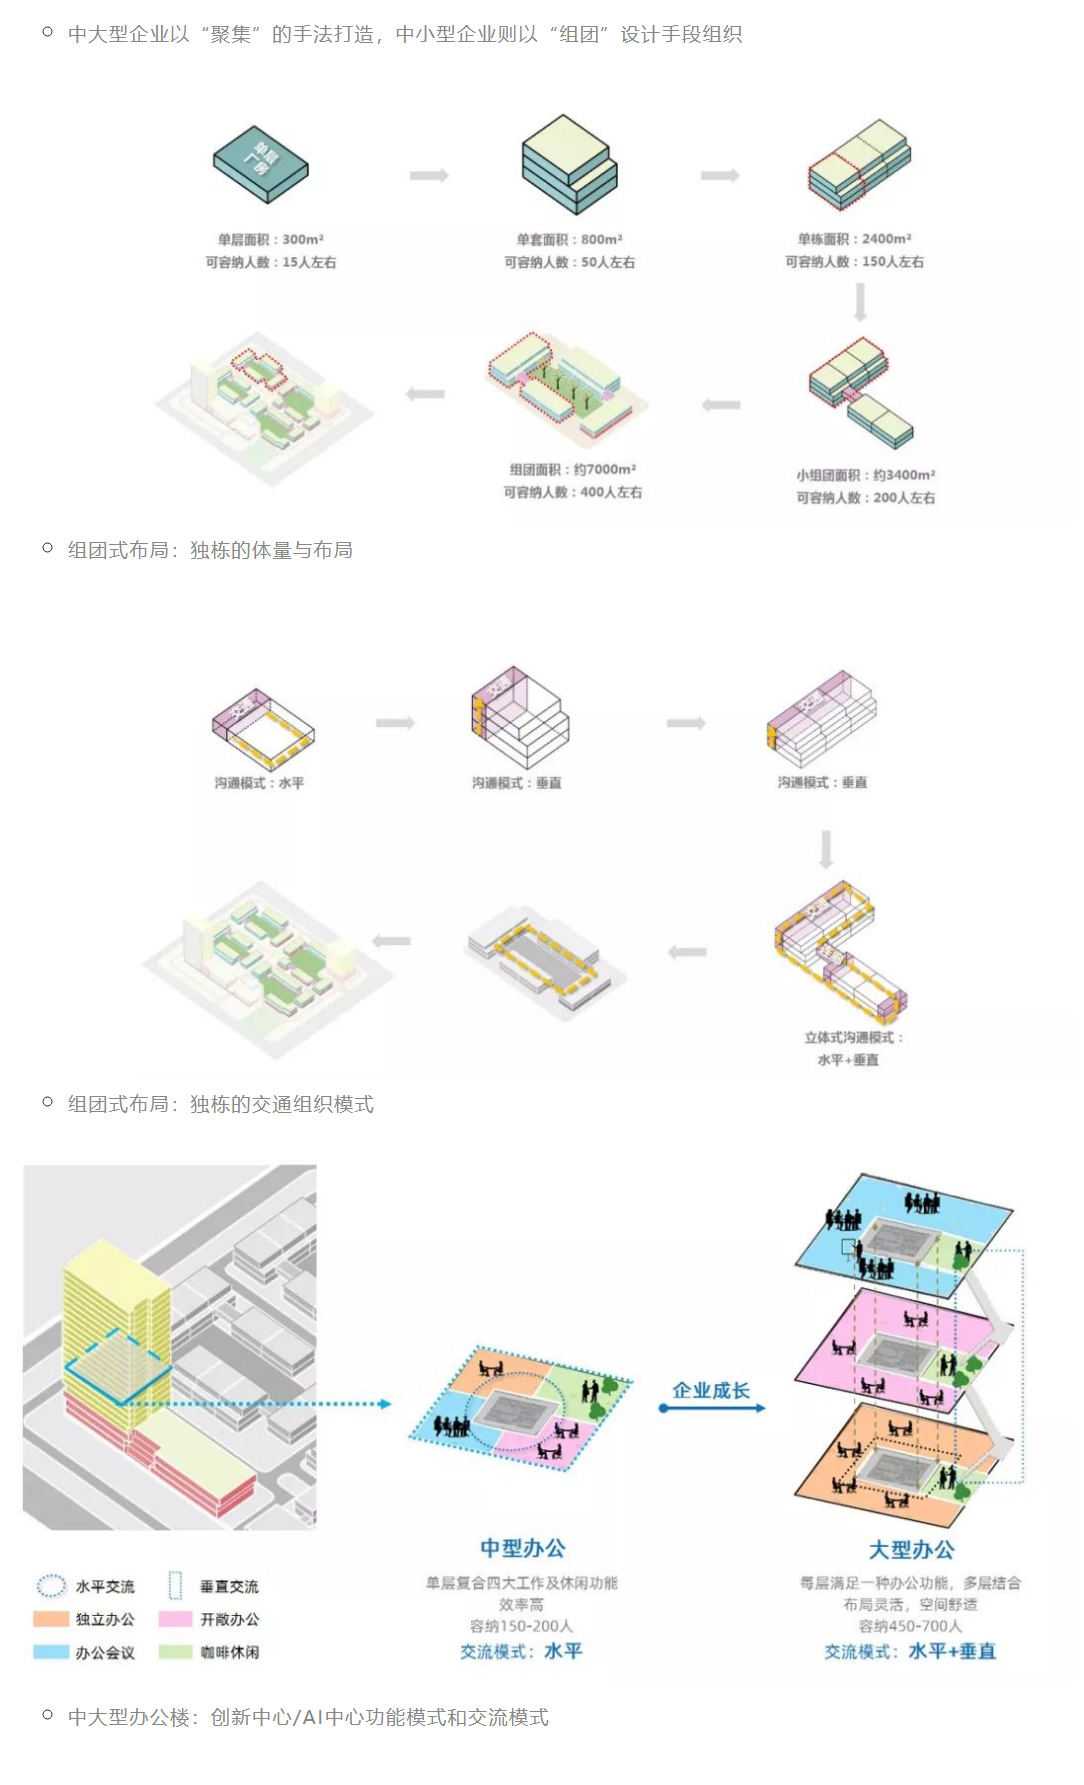 产业园区、智慧社区、商业街区-_-青岛腾讯双创小镇_0013_图层-14.jpg